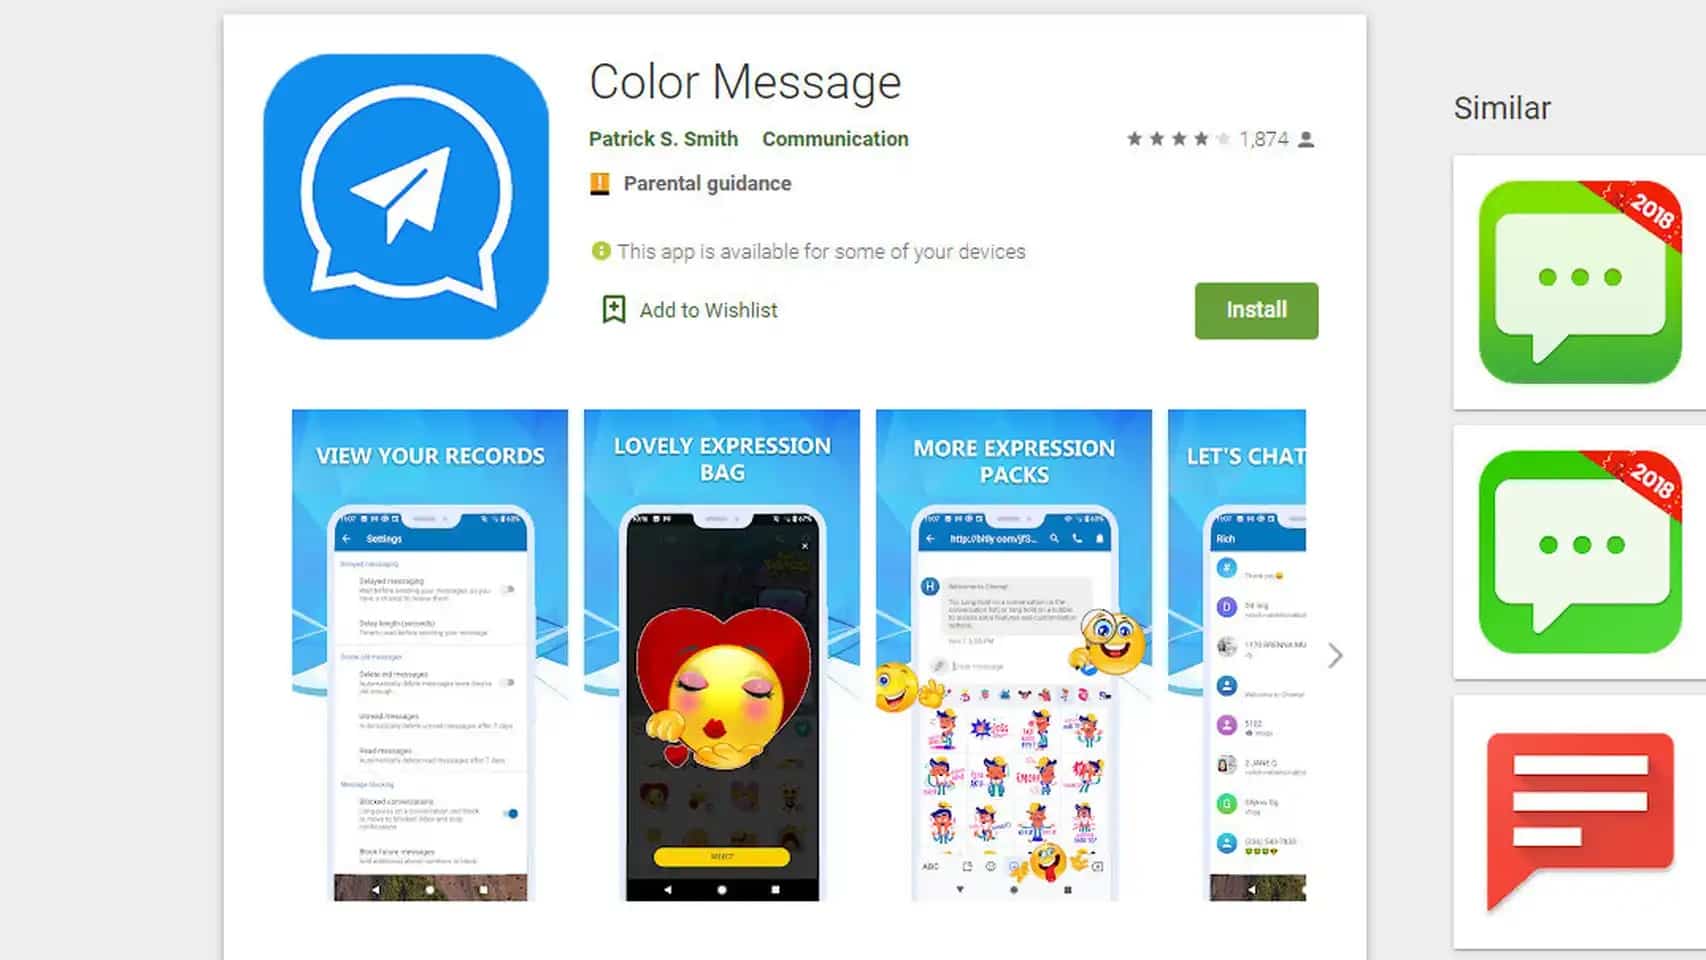 Aviso de malware en la app Color Message de Android